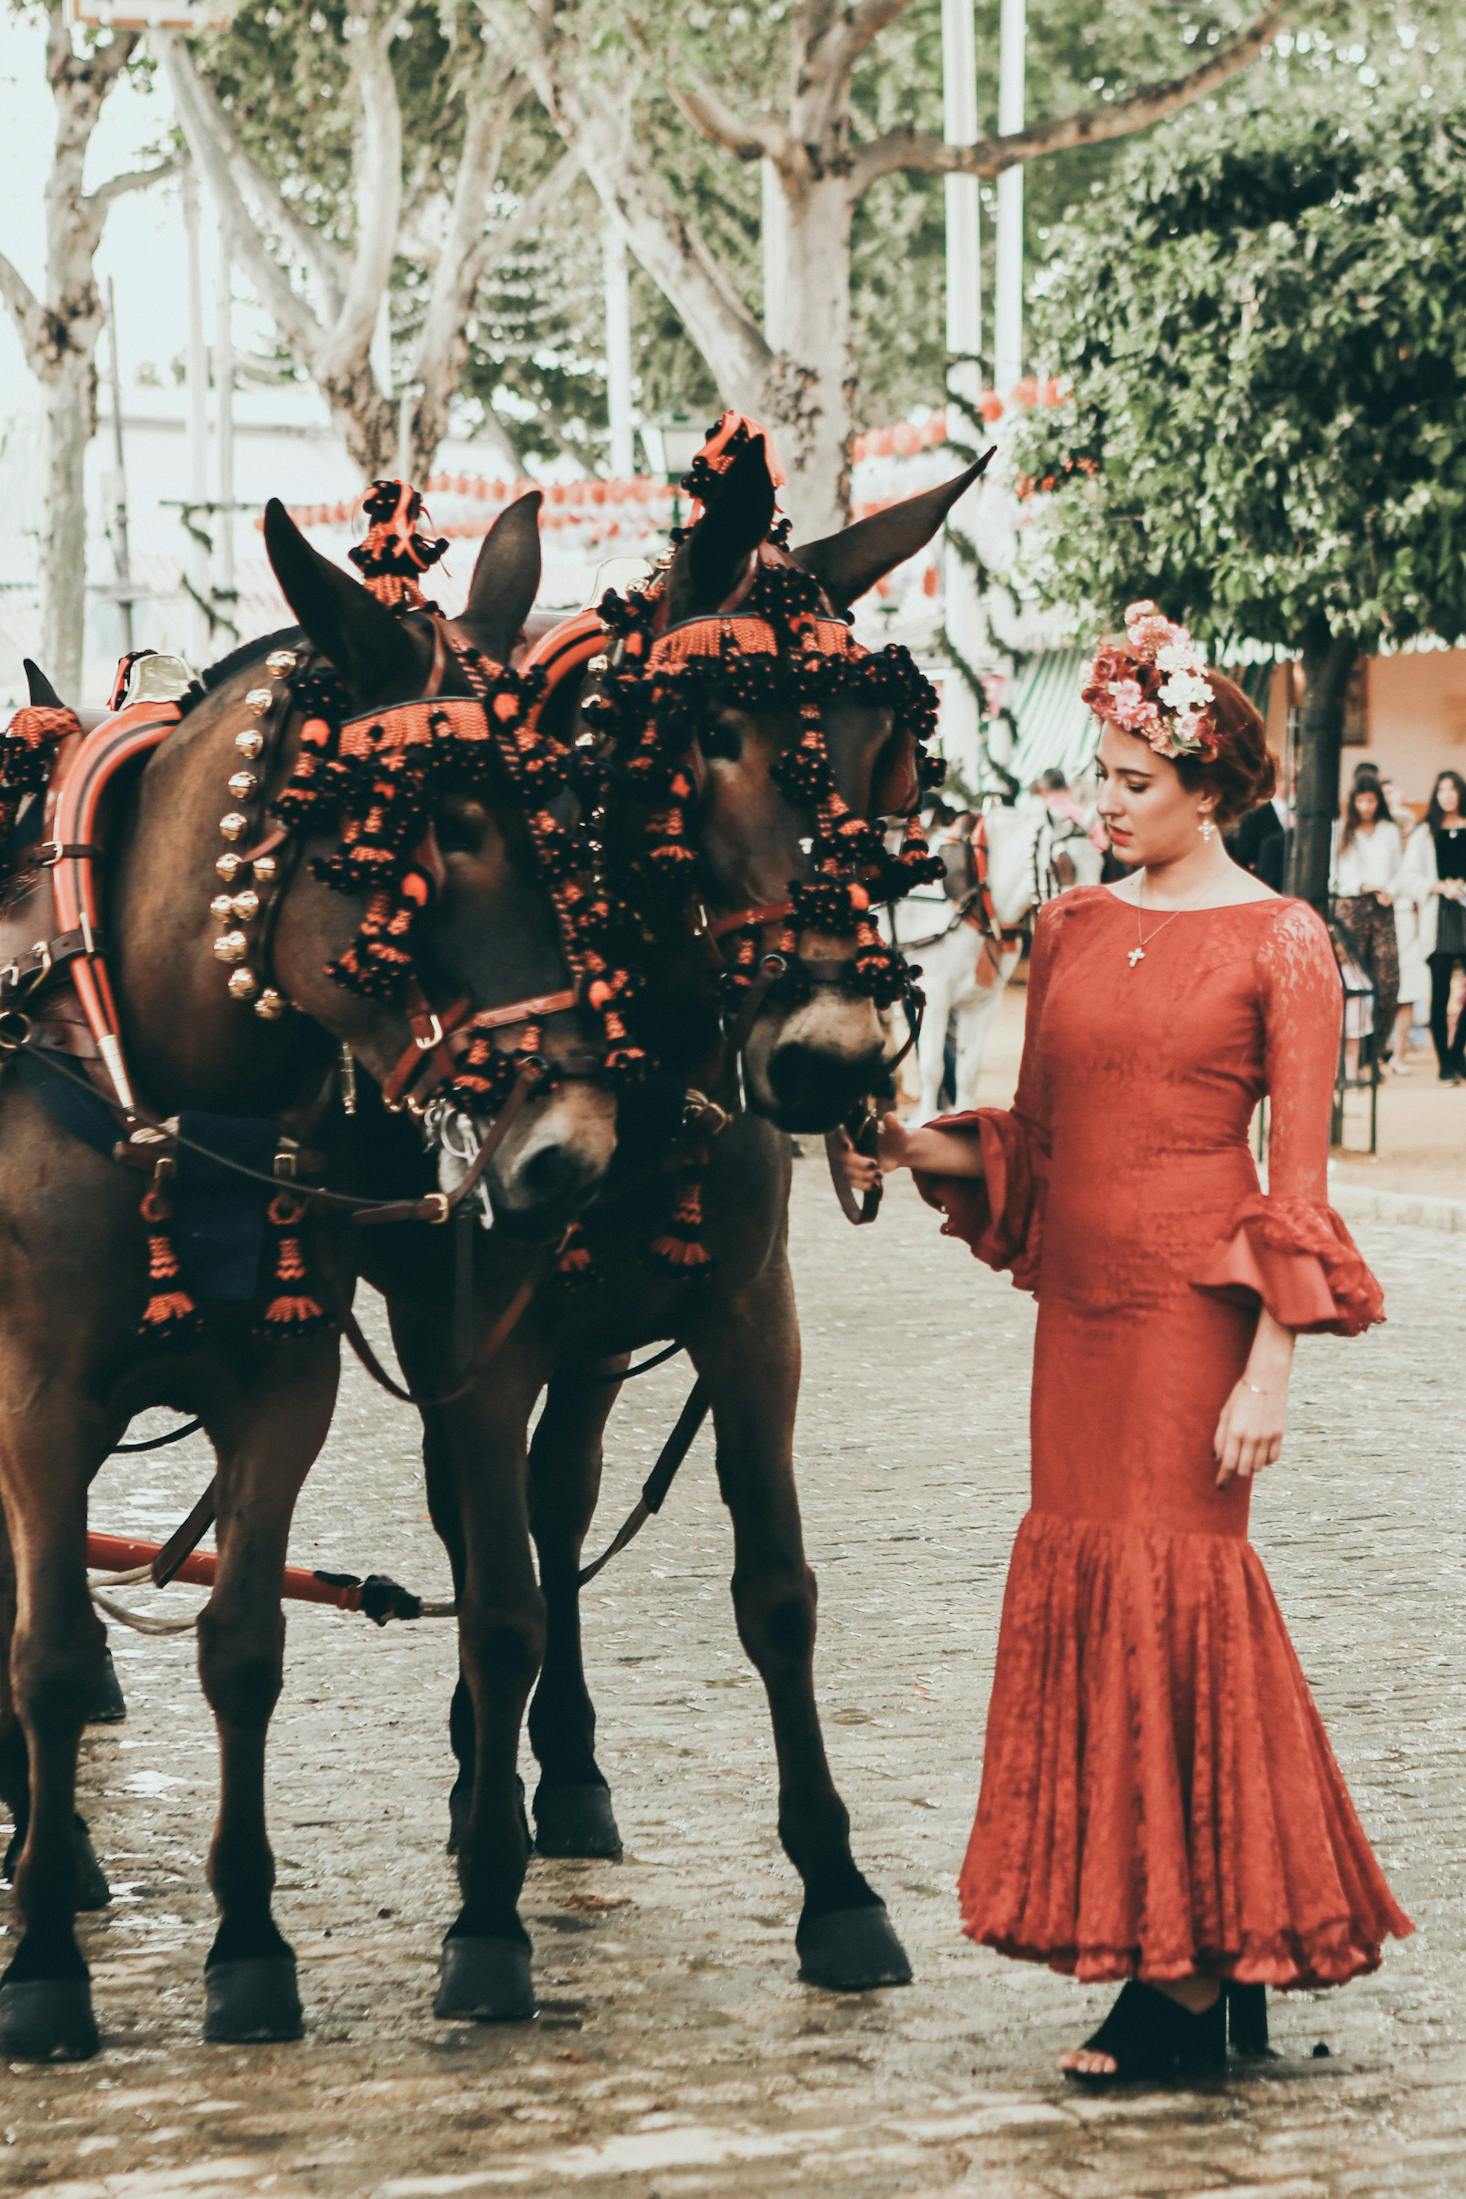 Una donna in abito da flamenco vicino a cavalli decorati per le feste.